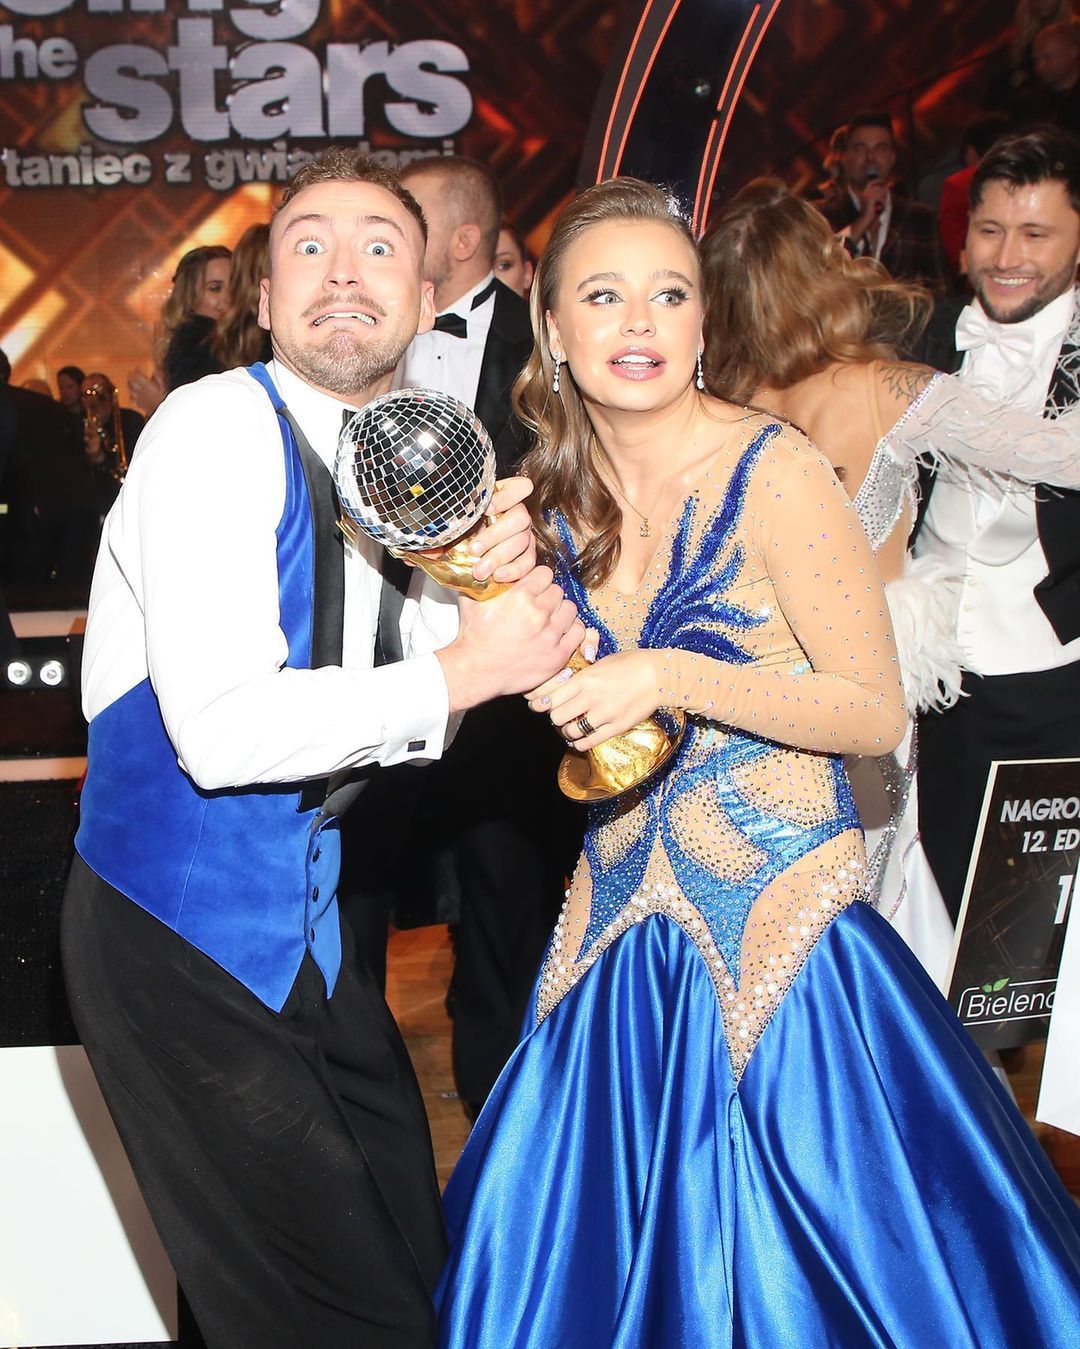 Oliwia Bieniuk podsumowała udział w Tańcu z gwiazdami